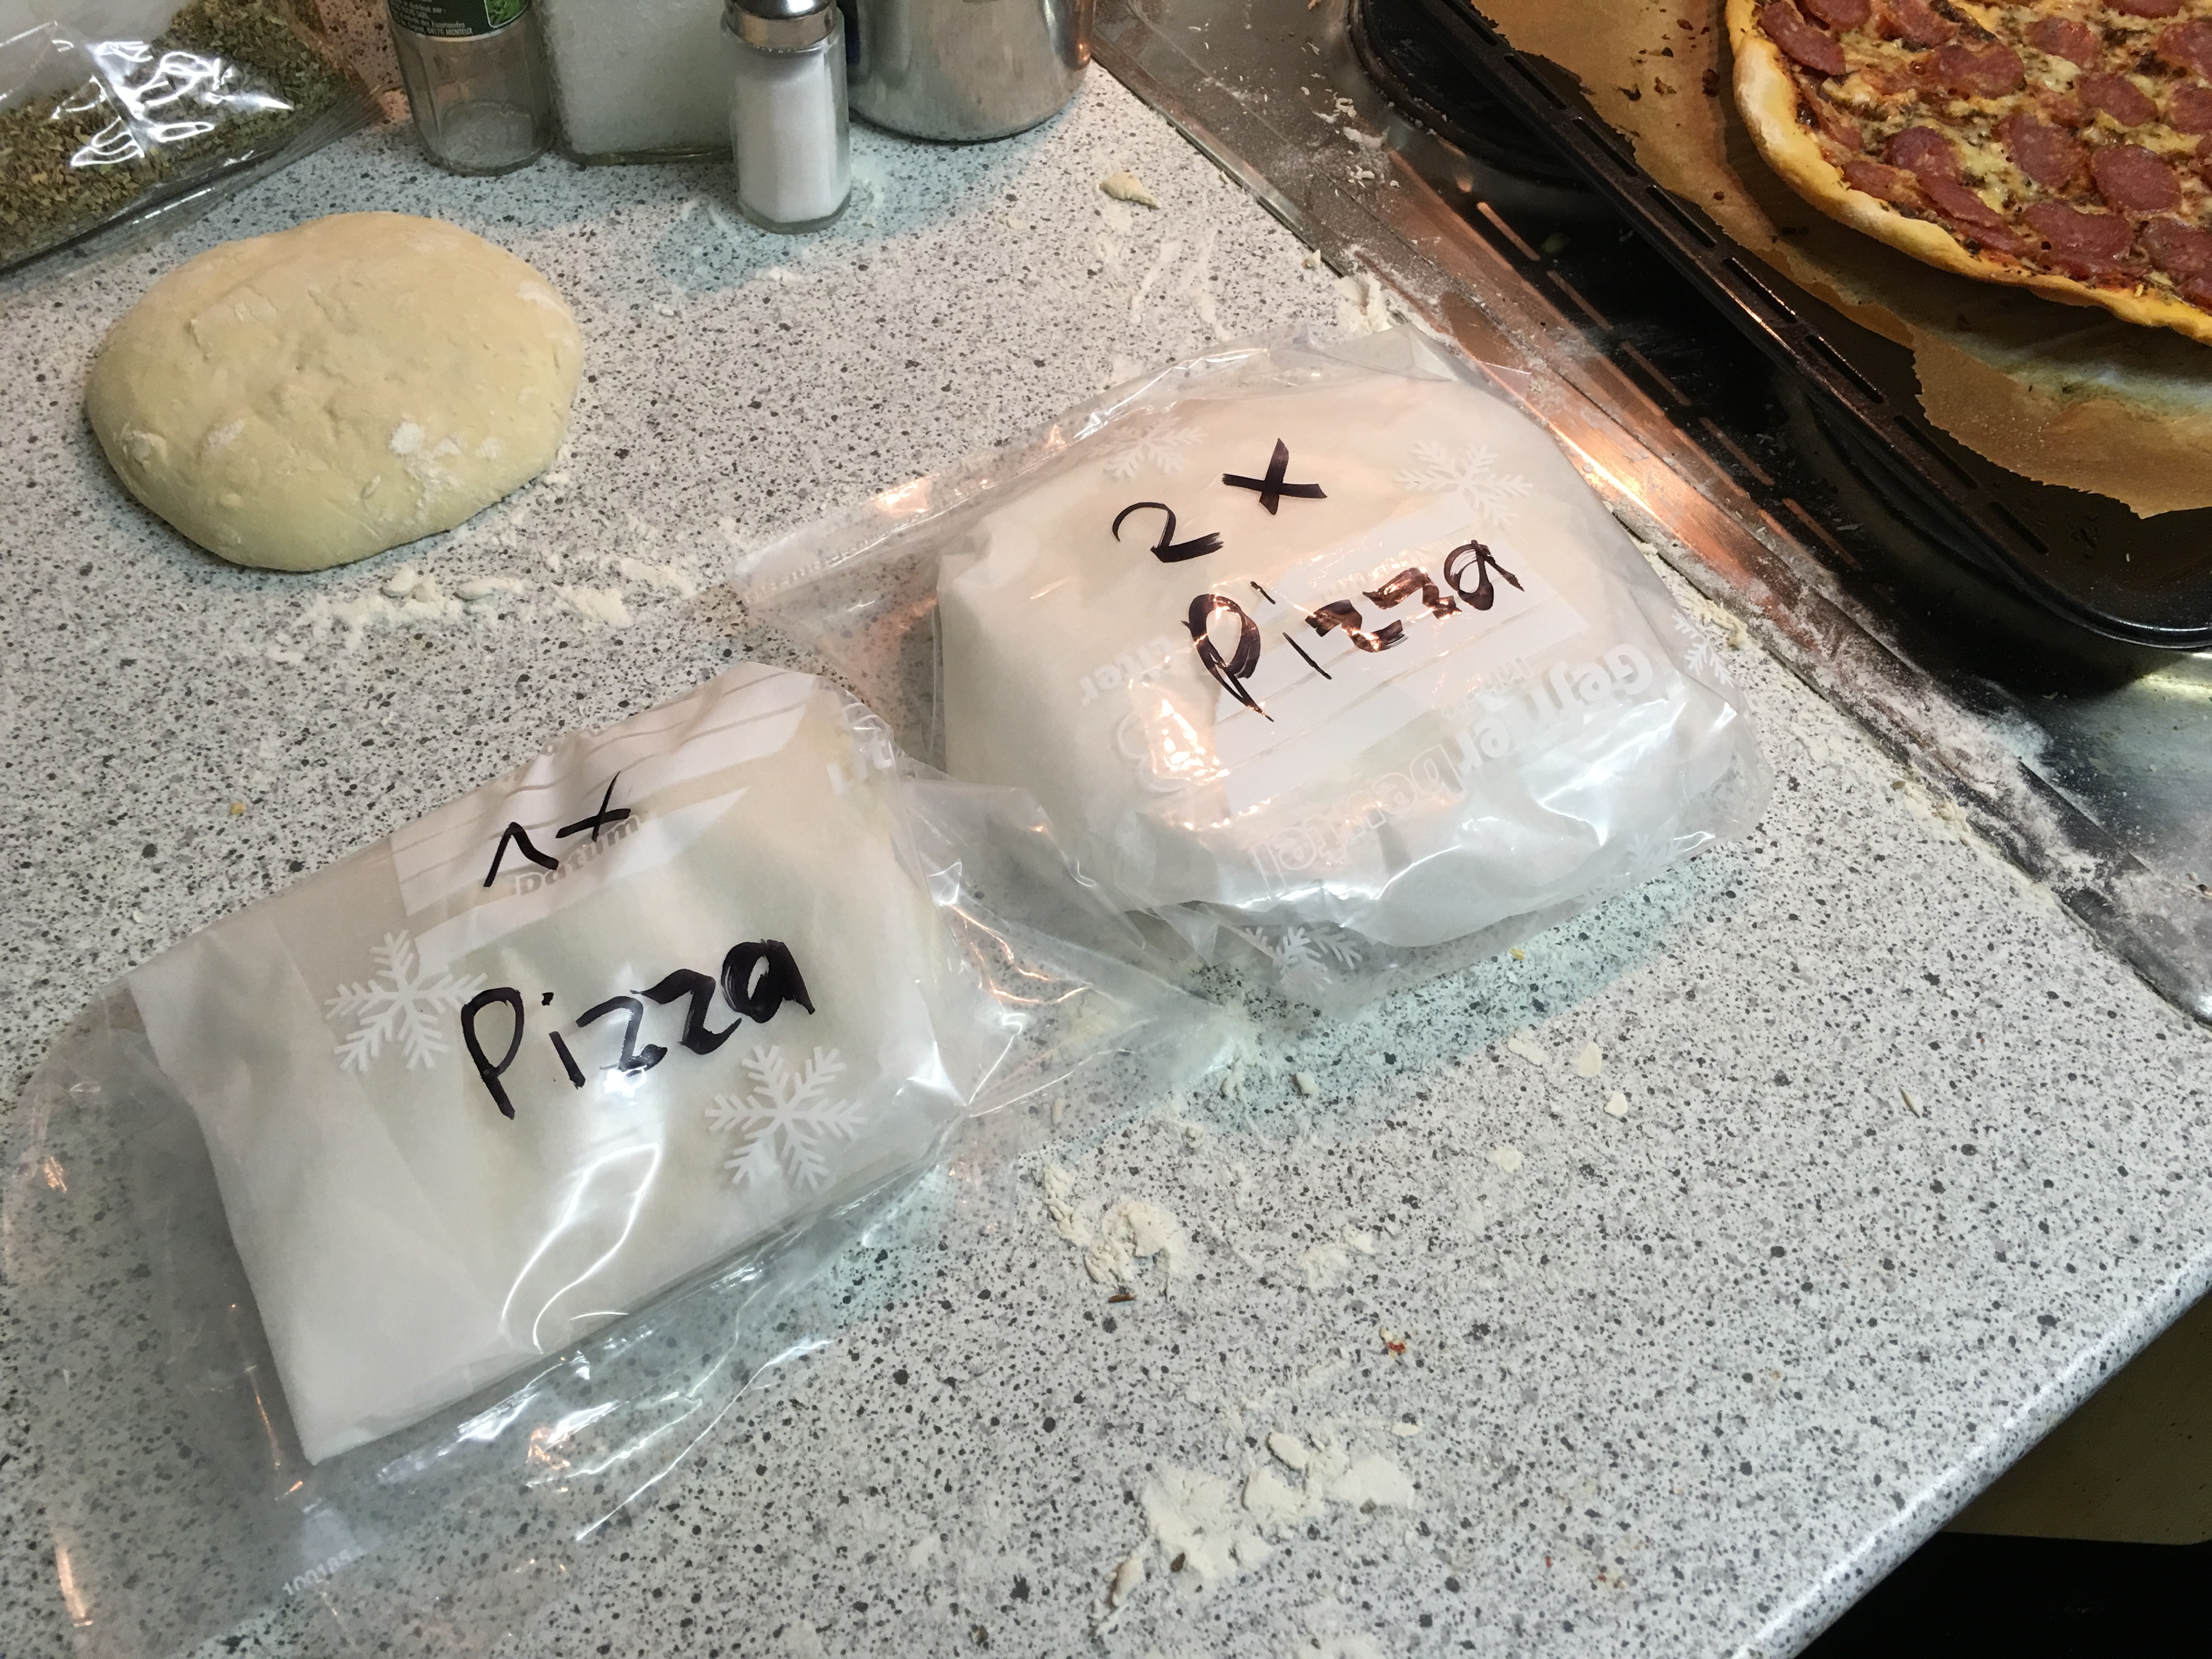 Pizzateig einfrieren und haltbar machen | Chilirezept.de